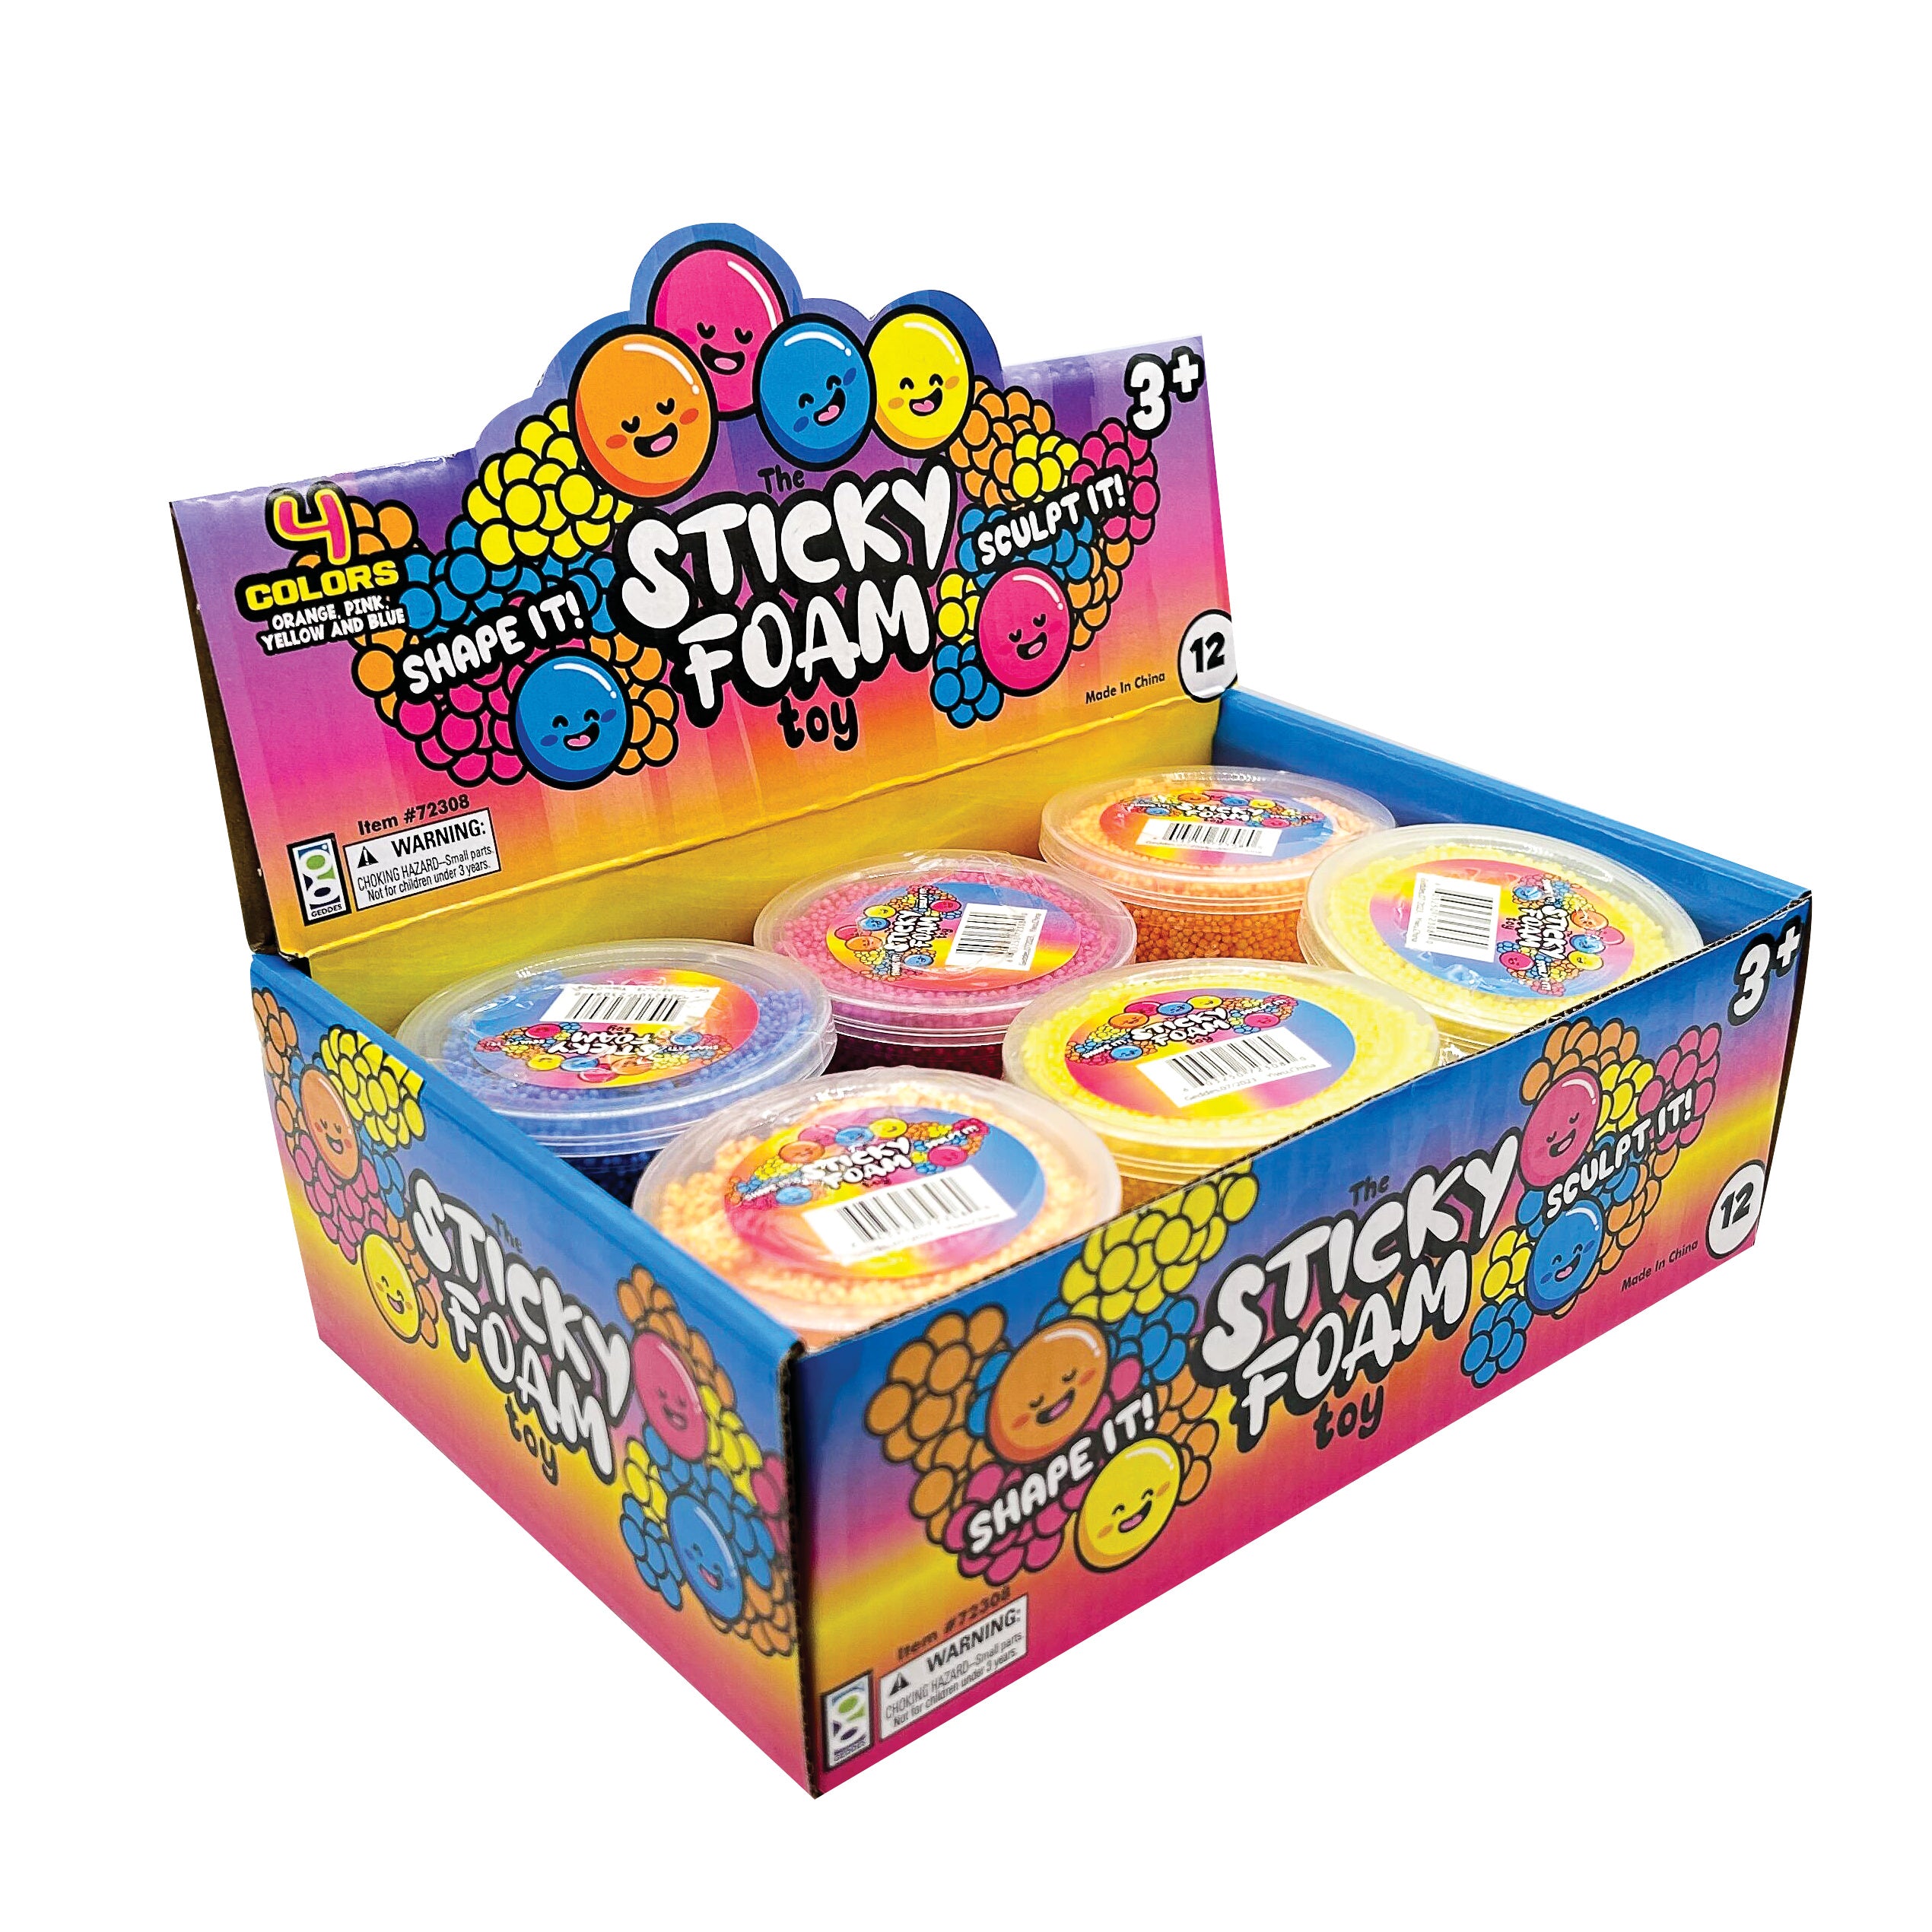 Sticky Foam Toys